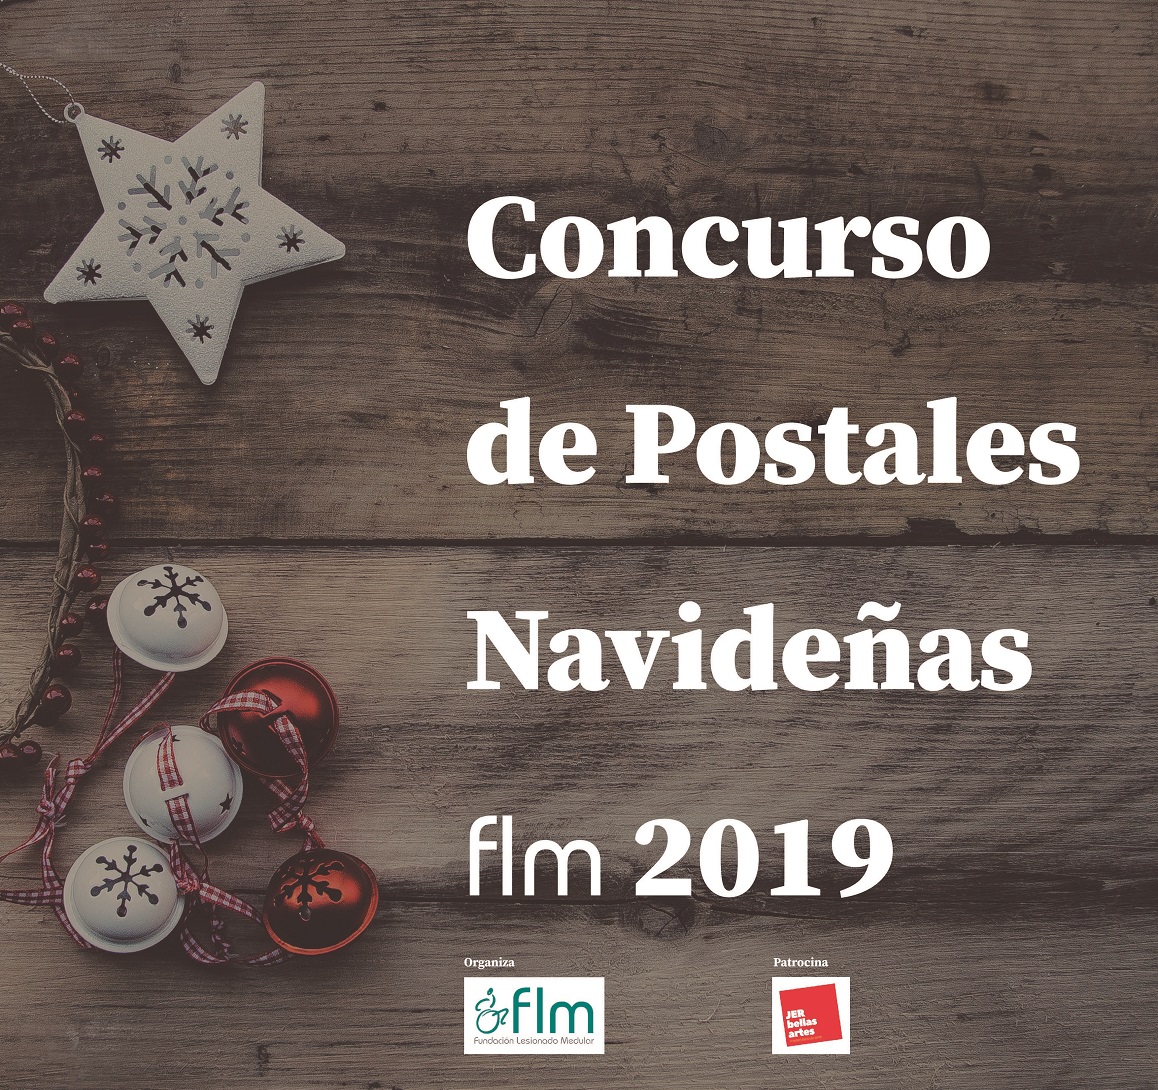 Recorte_Cartel_Concurso-Postales-Navide%C3%B1as-2019.jpg